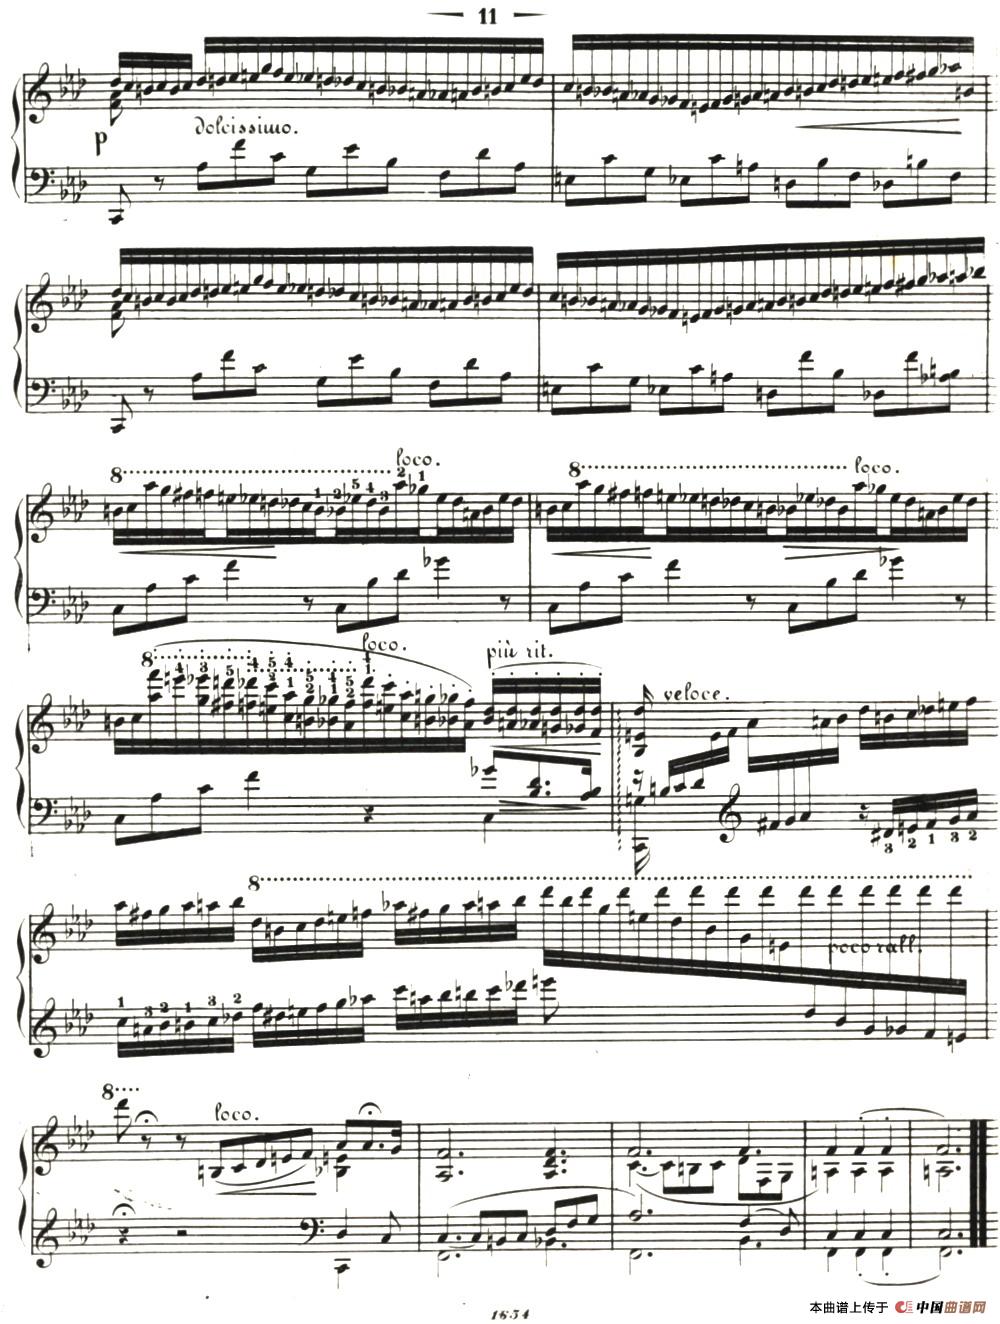 李斯特音乐会练习曲 S144（2 轻盈 f小调 S144 La leggierezza F minor）(1)_022=.jpg